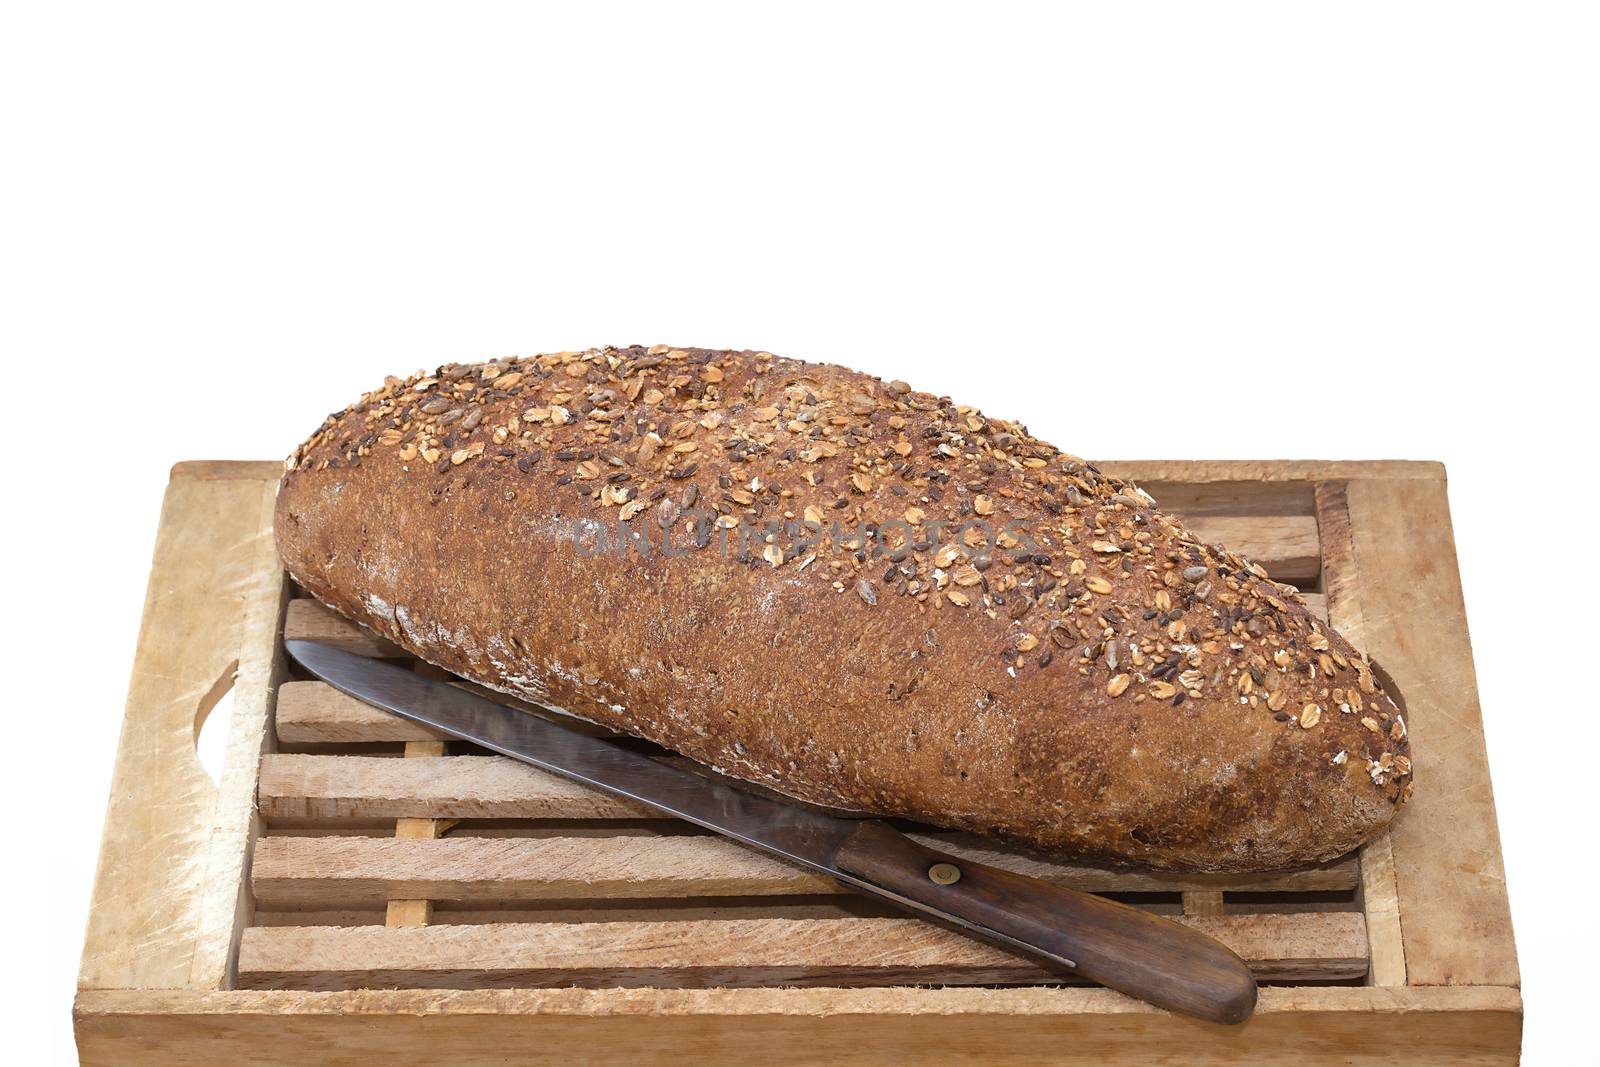 Whole Grain Bread on board by milinz